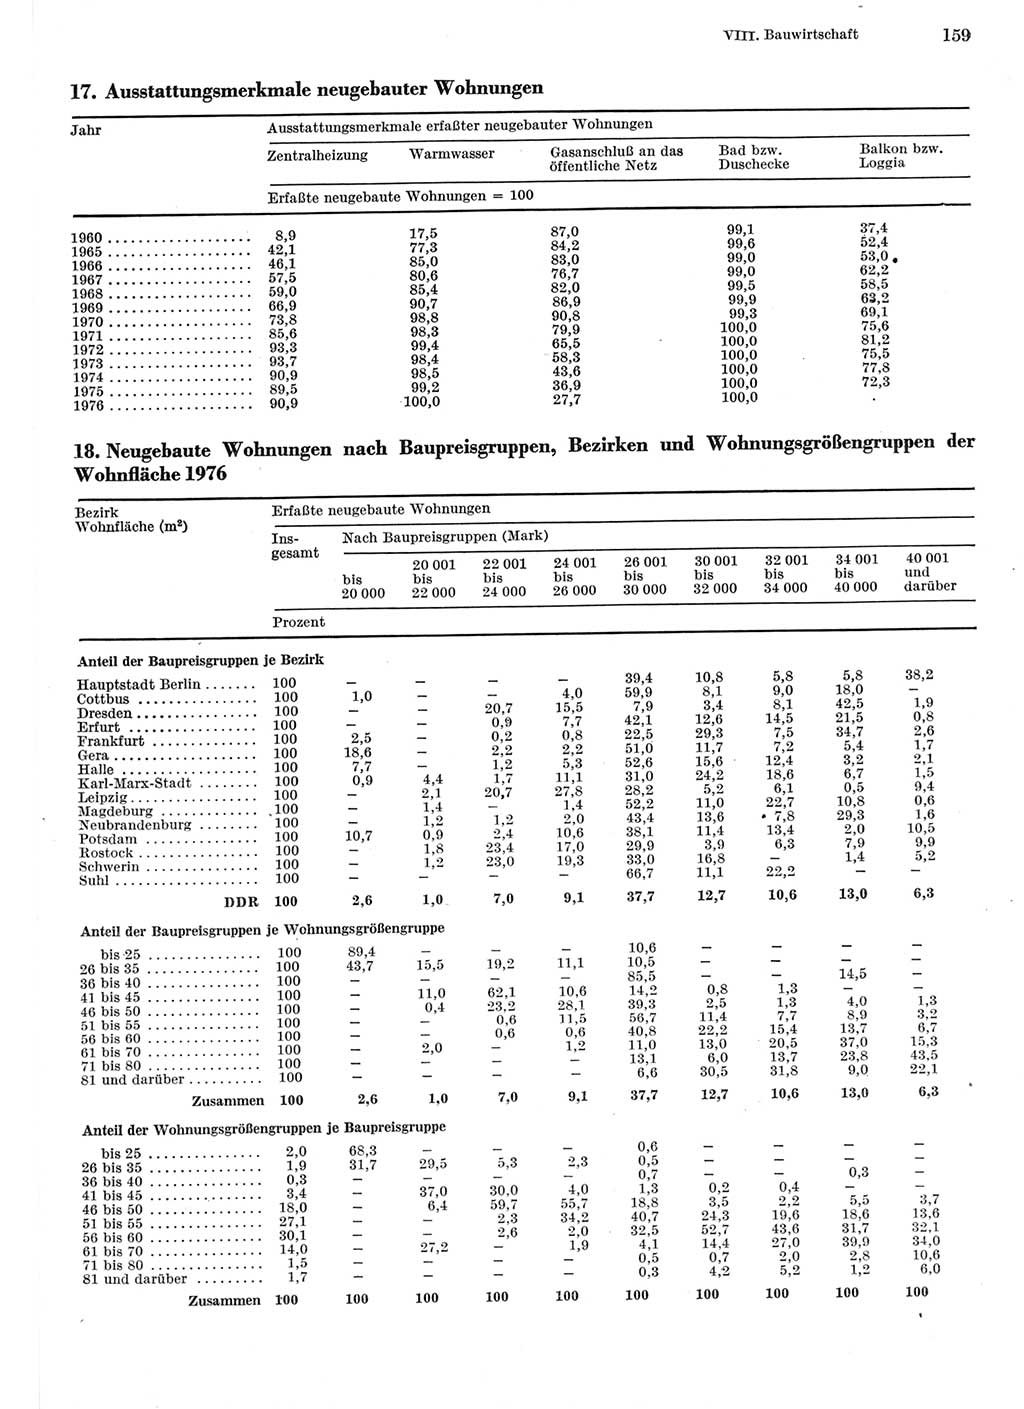 Statistisches Jahrbuch der Deutschen Demokratischen Republik (DDR) 1977, Seite 159 (Stat. Jb. DDR 1977, S. 159)